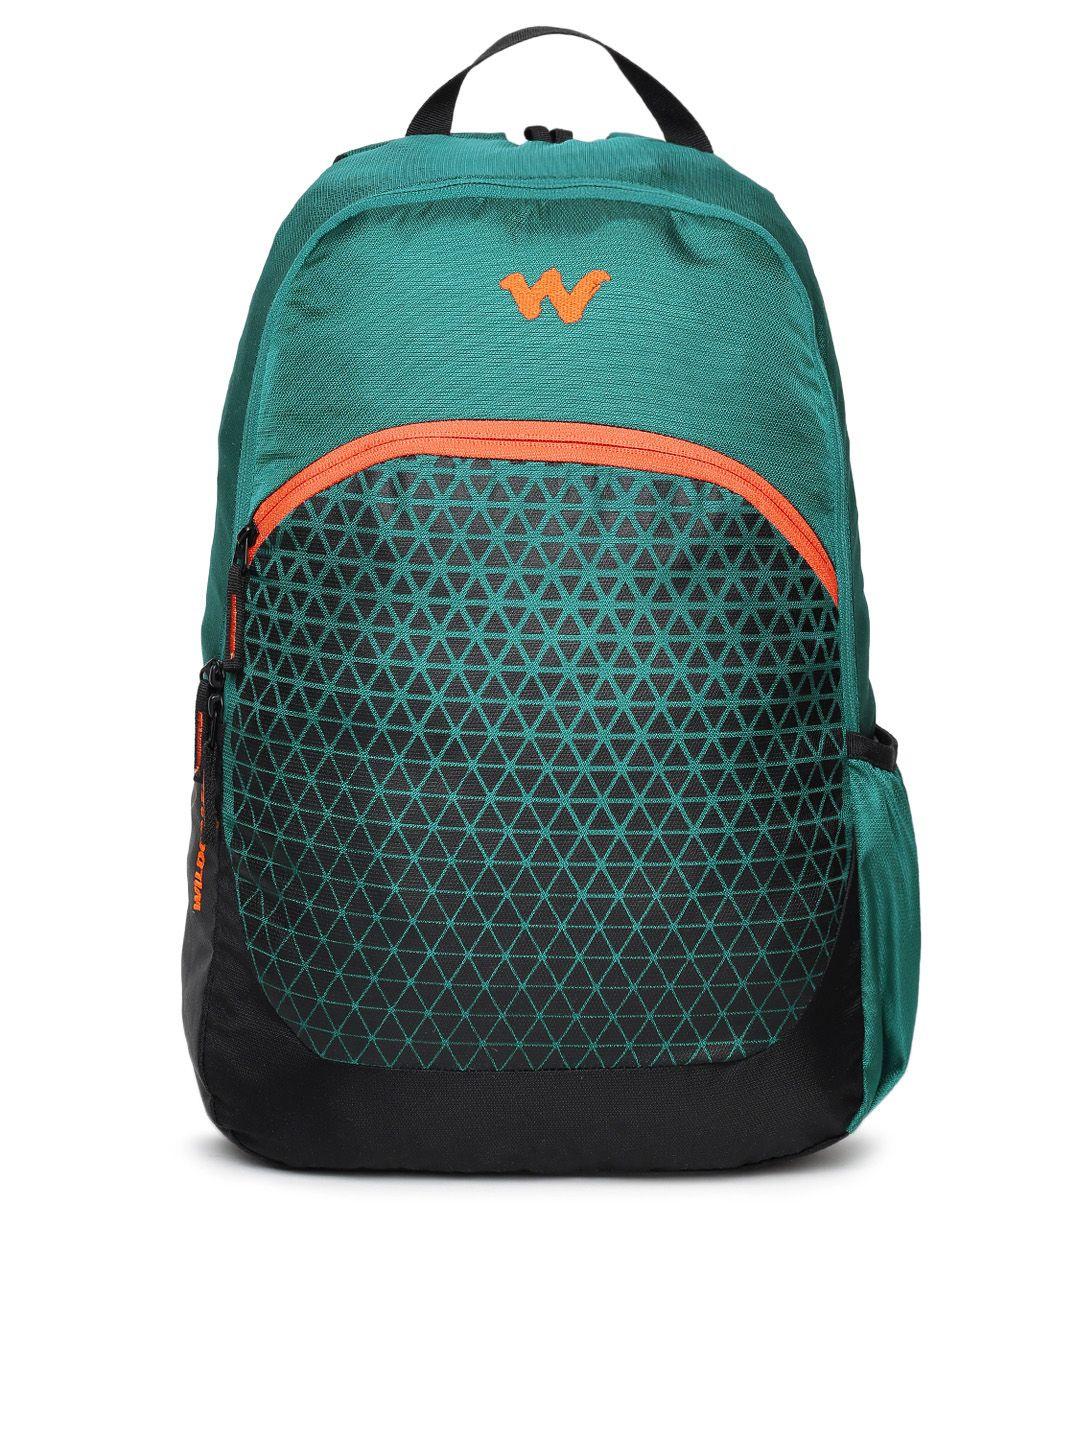 wildcraft unisex teal & black geometric backpack